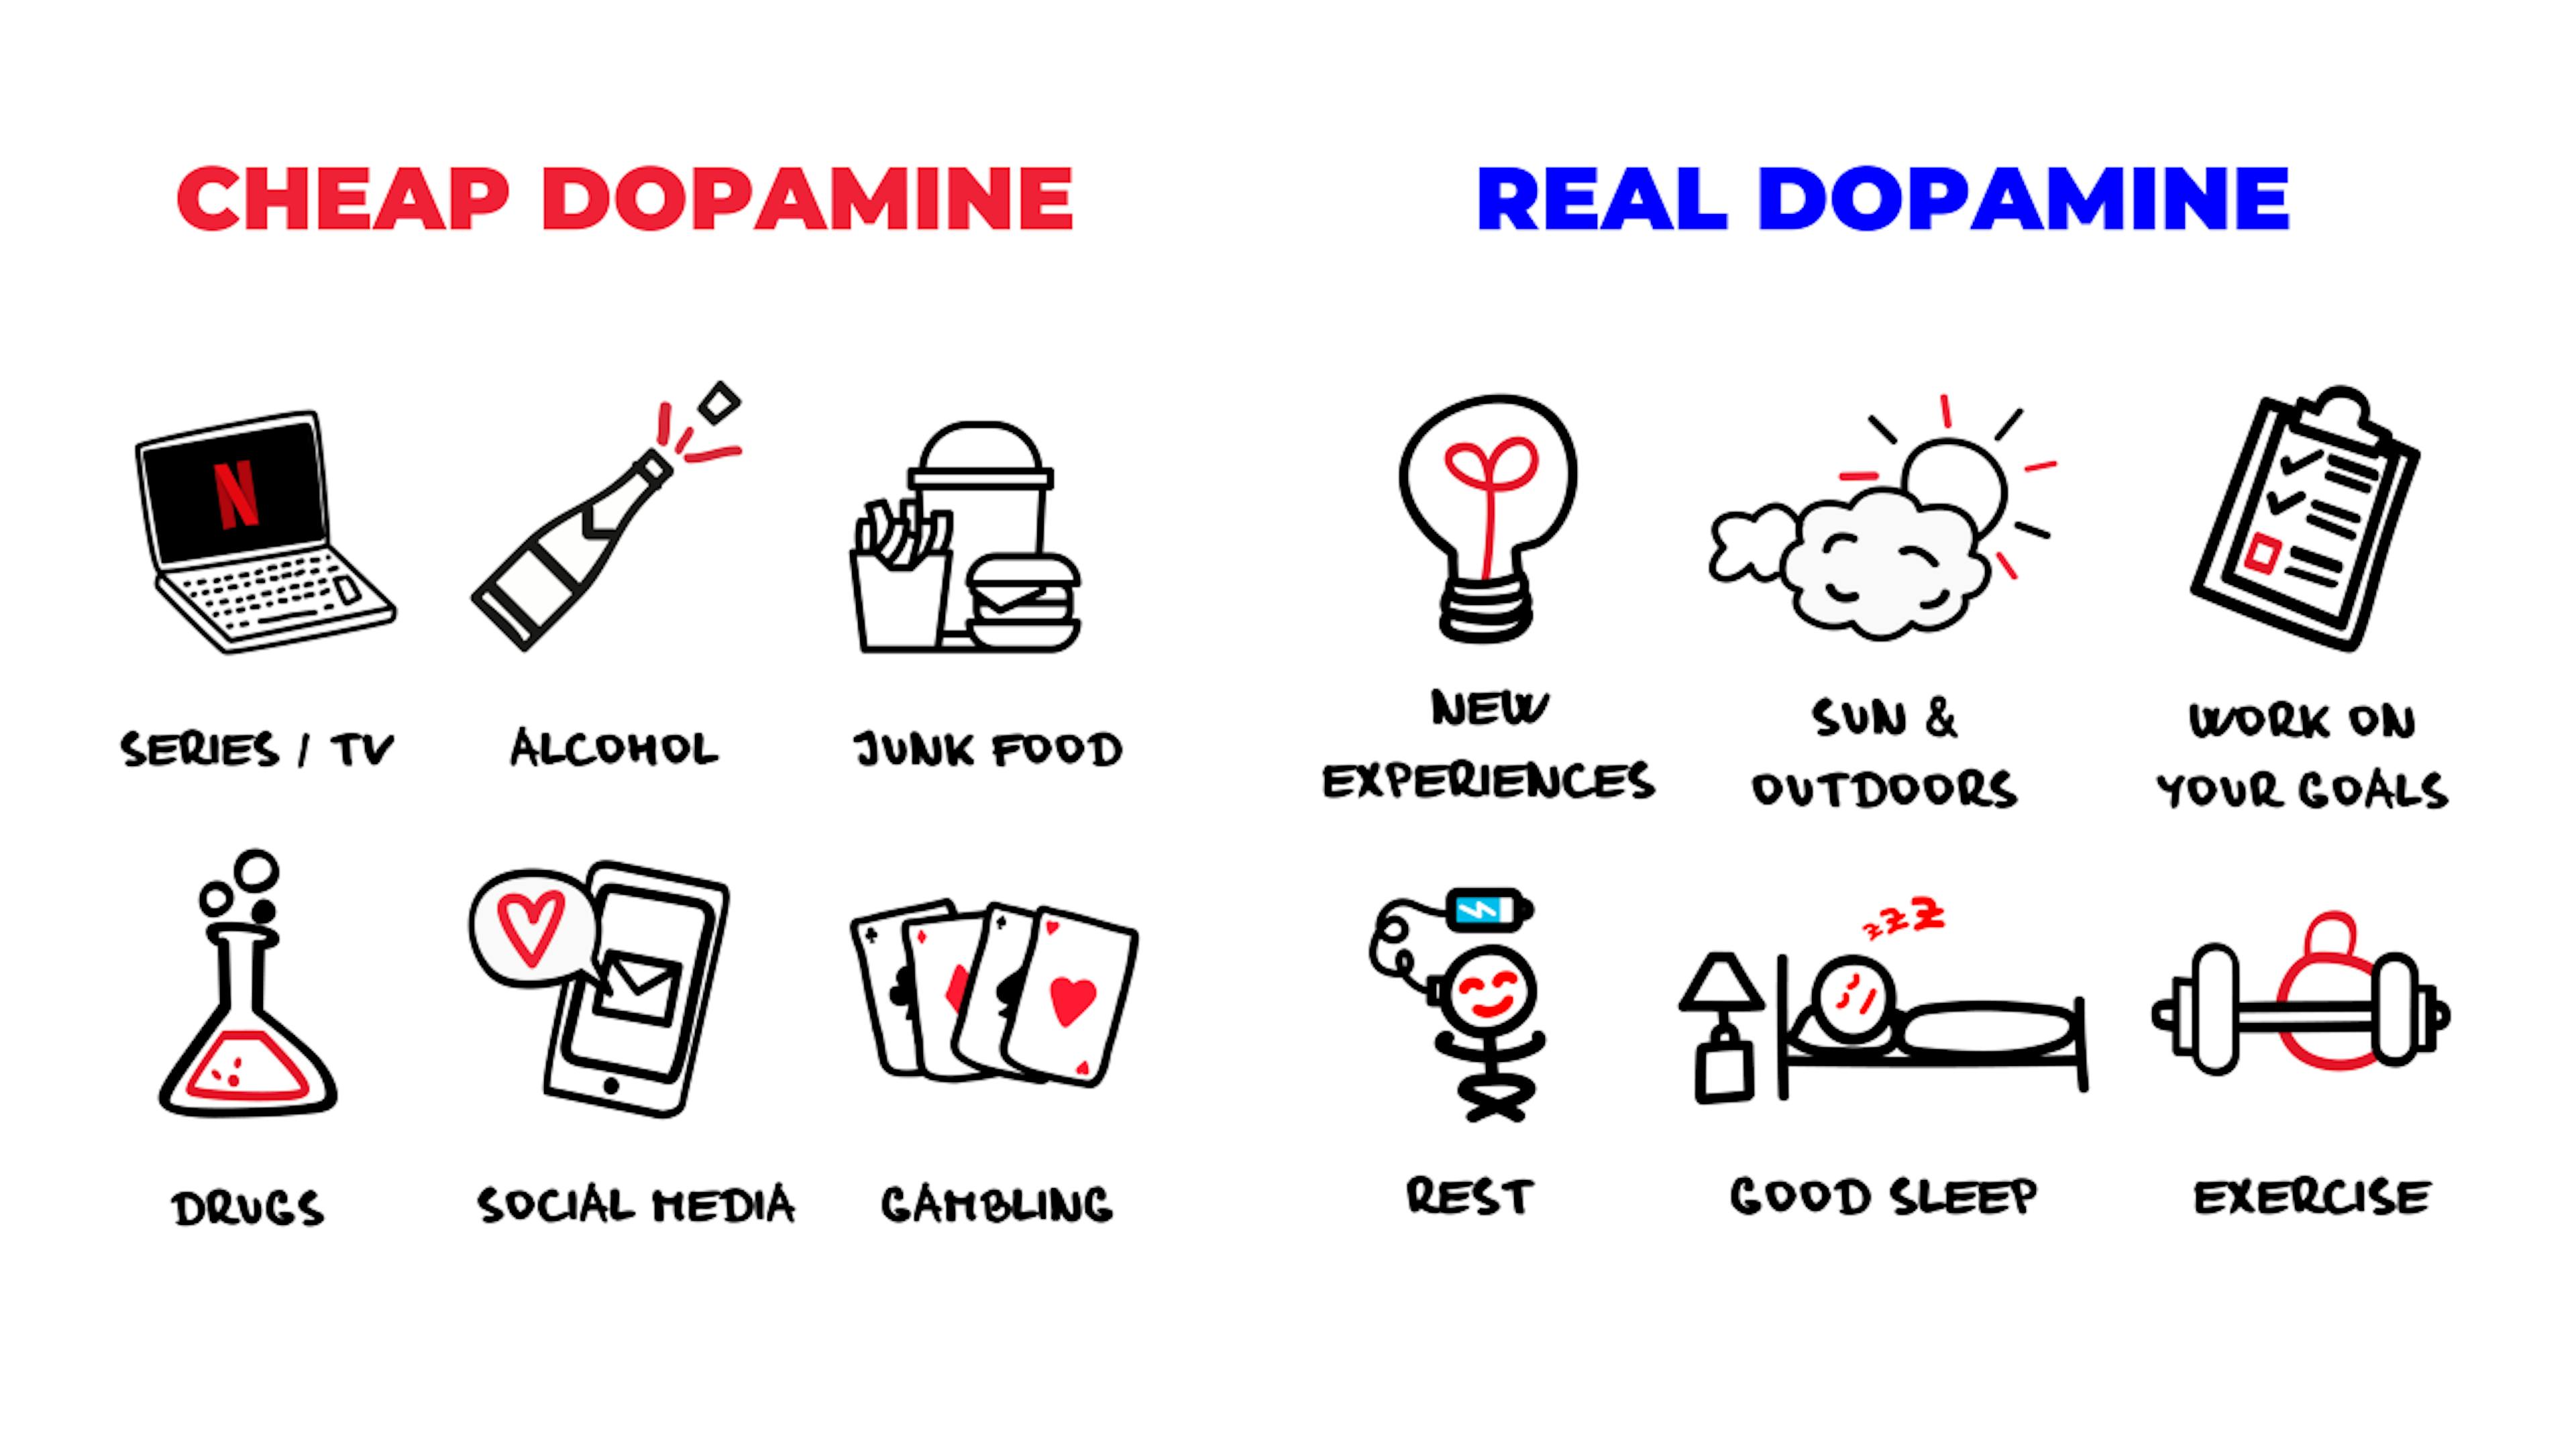 Dopamine rẻ so với thật